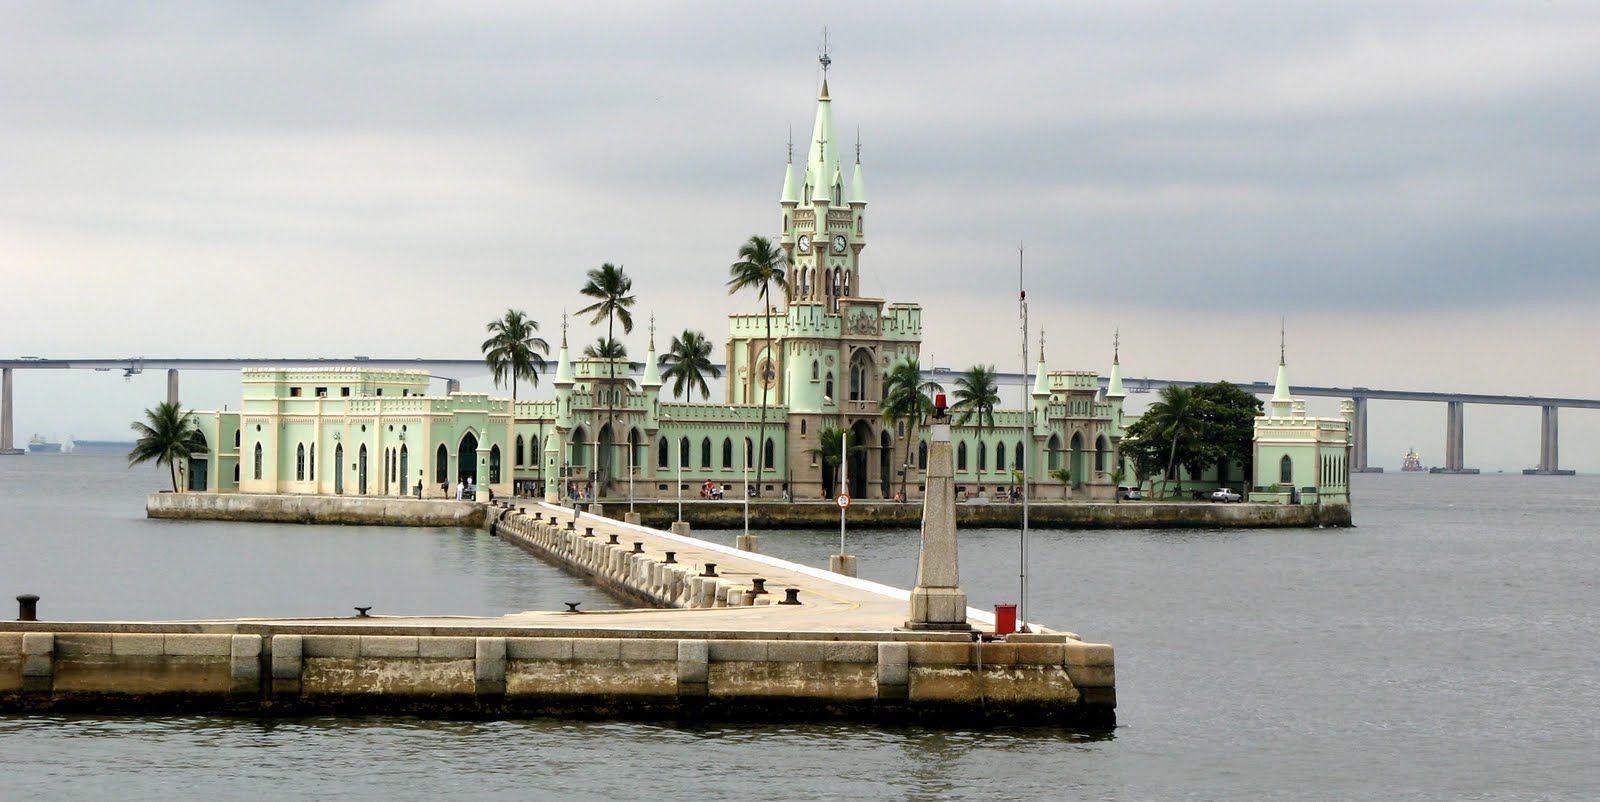 Palace at Ilha Fiscal - Sheet1